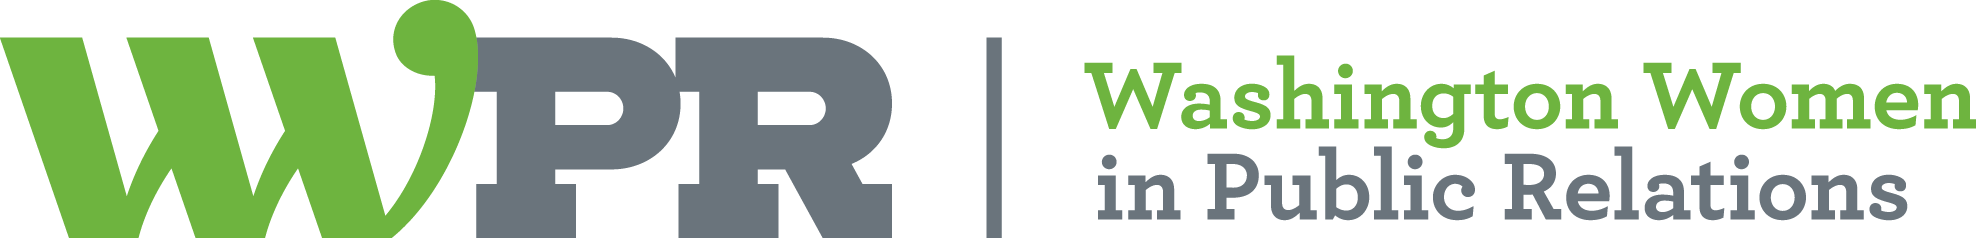 WWPR Washington Women in PR Logo